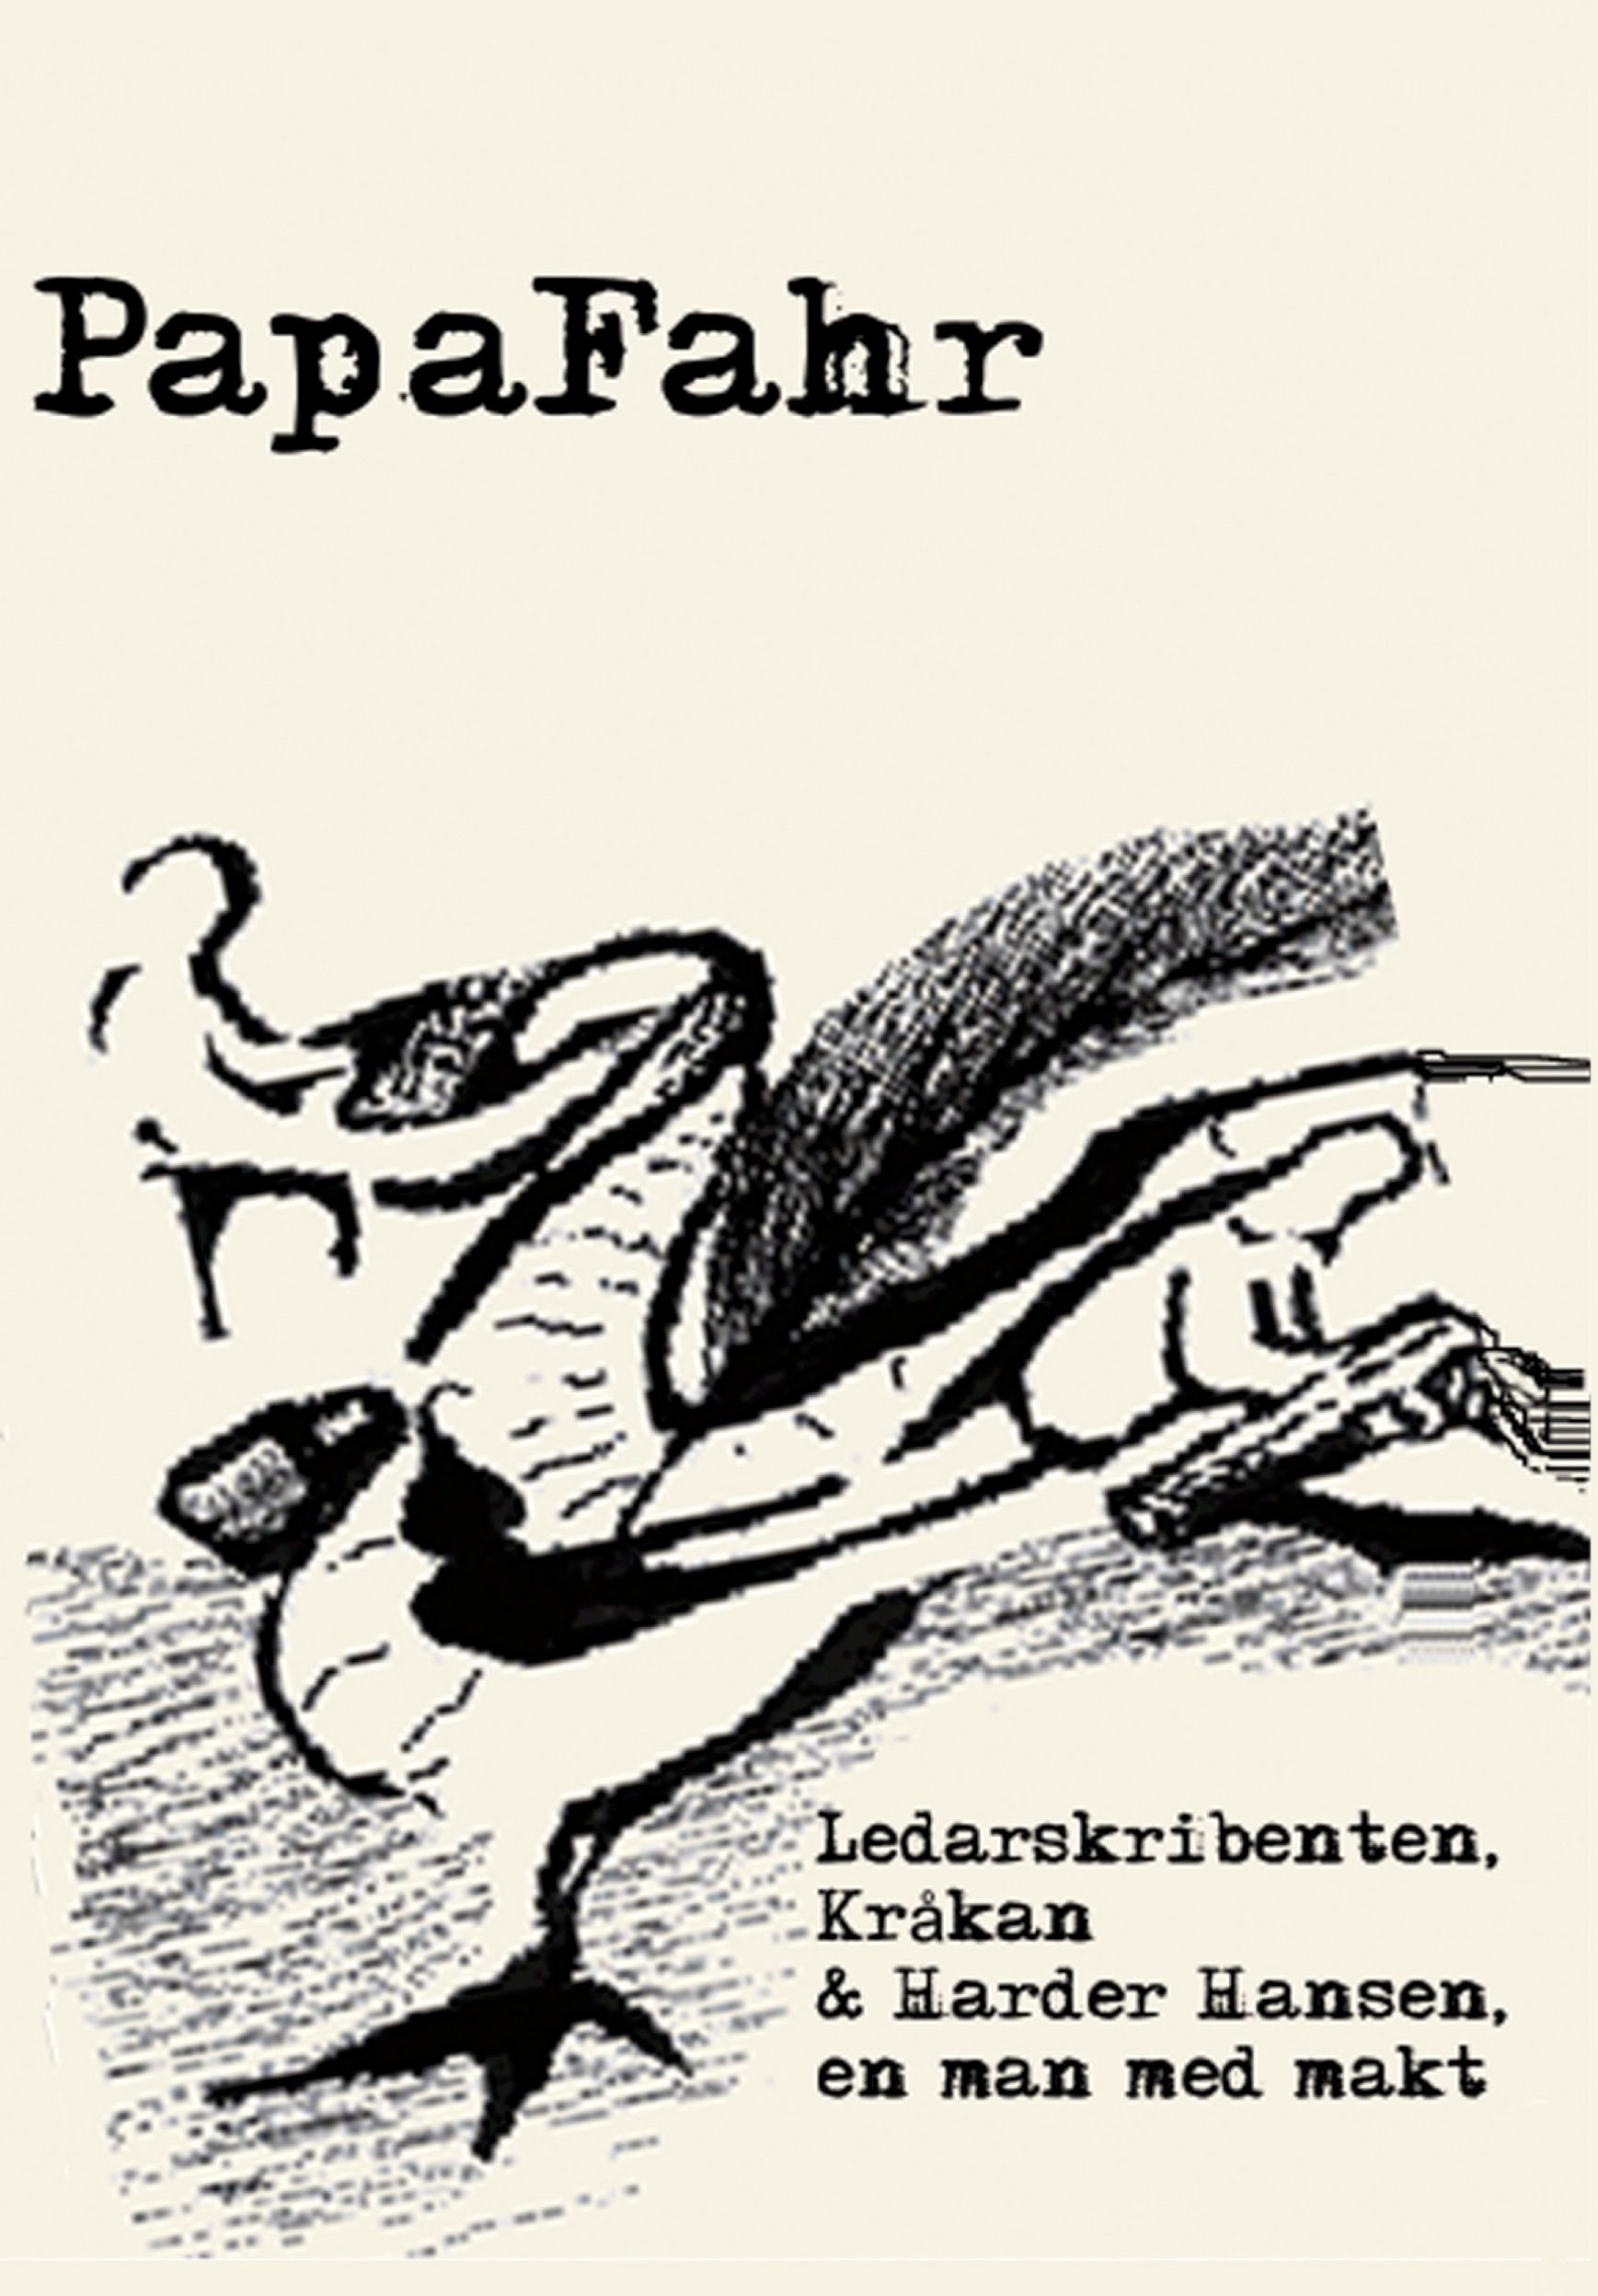 Ledarskribenten, Kråkan & Harder Hansen - en man med makt , e-bog af PapaFahr